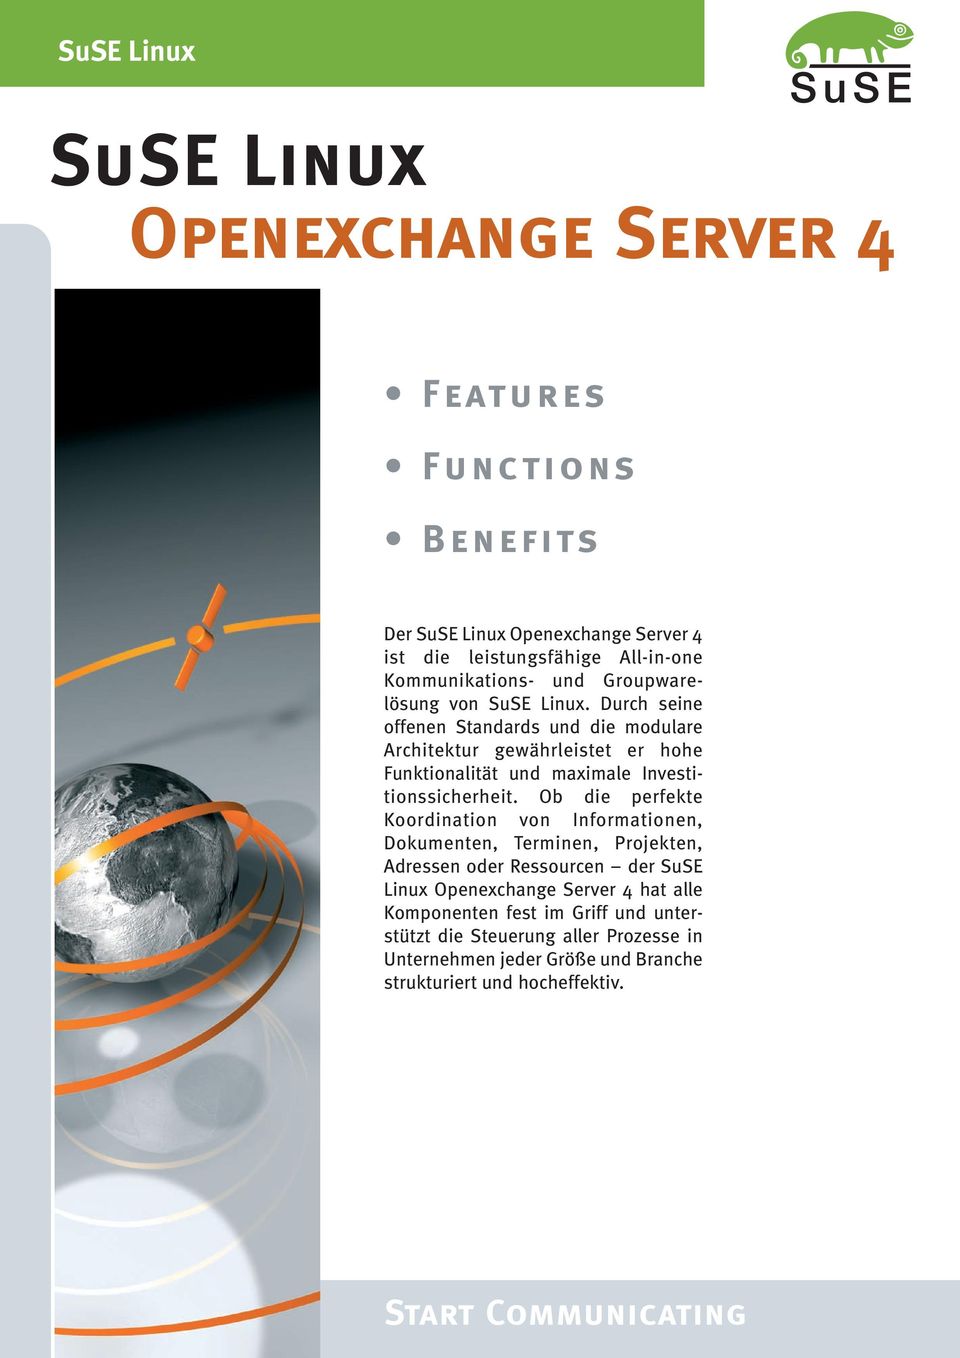 Ob die perfekte Koordination von Informationen, Dokumenten, Terminen, Projekten, Adressen oder Ressourcen der SuSE Linux Openexchange Server 4 hat alle